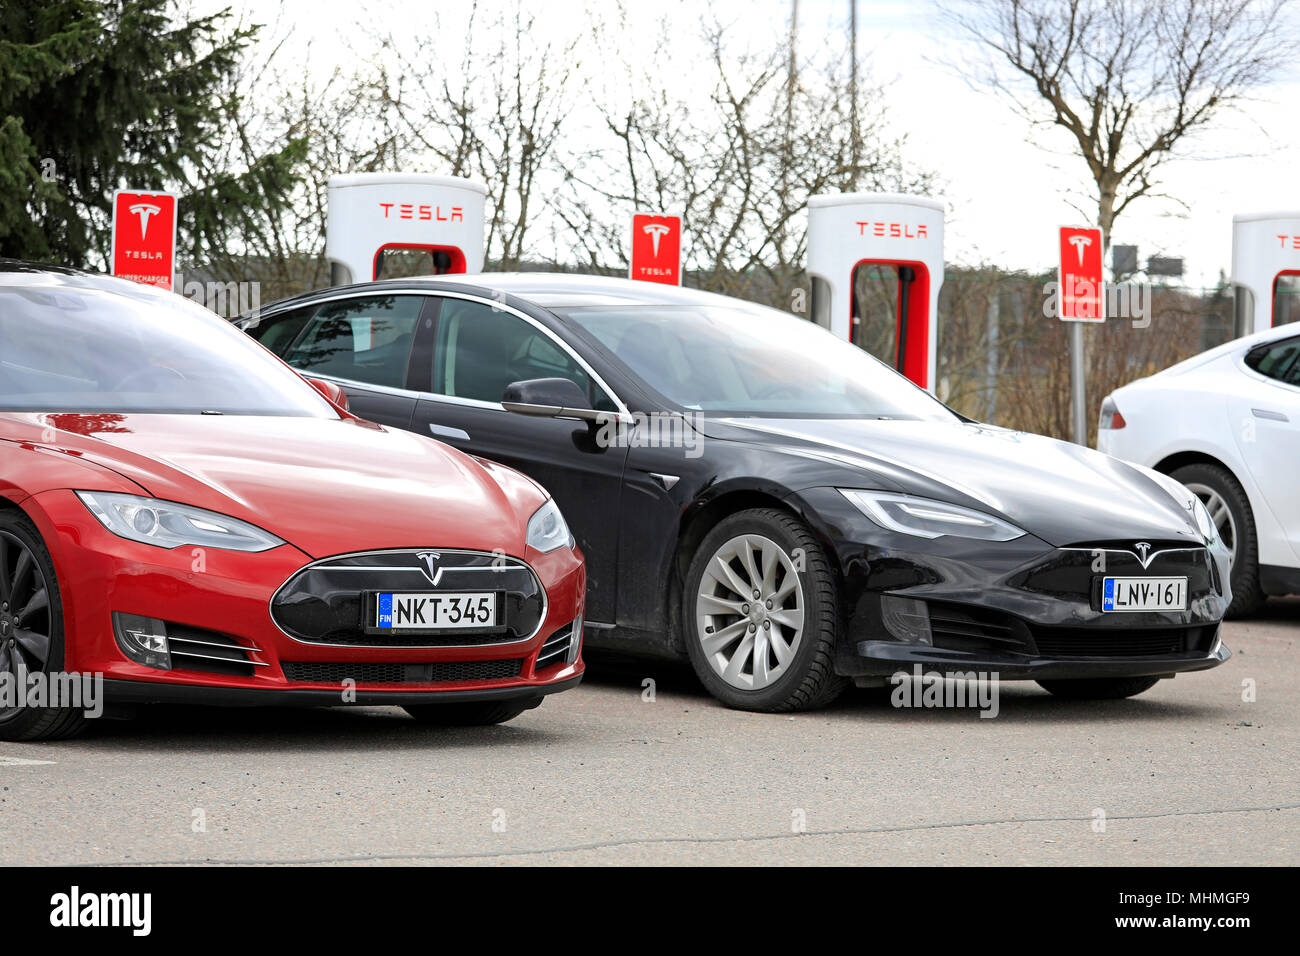 Due Tesla Model S auto elettriche, rosso del design precedente, nero di design aggiornato, sono in carica batteria a Supercharger station su un giorno di primavera Foto Stock